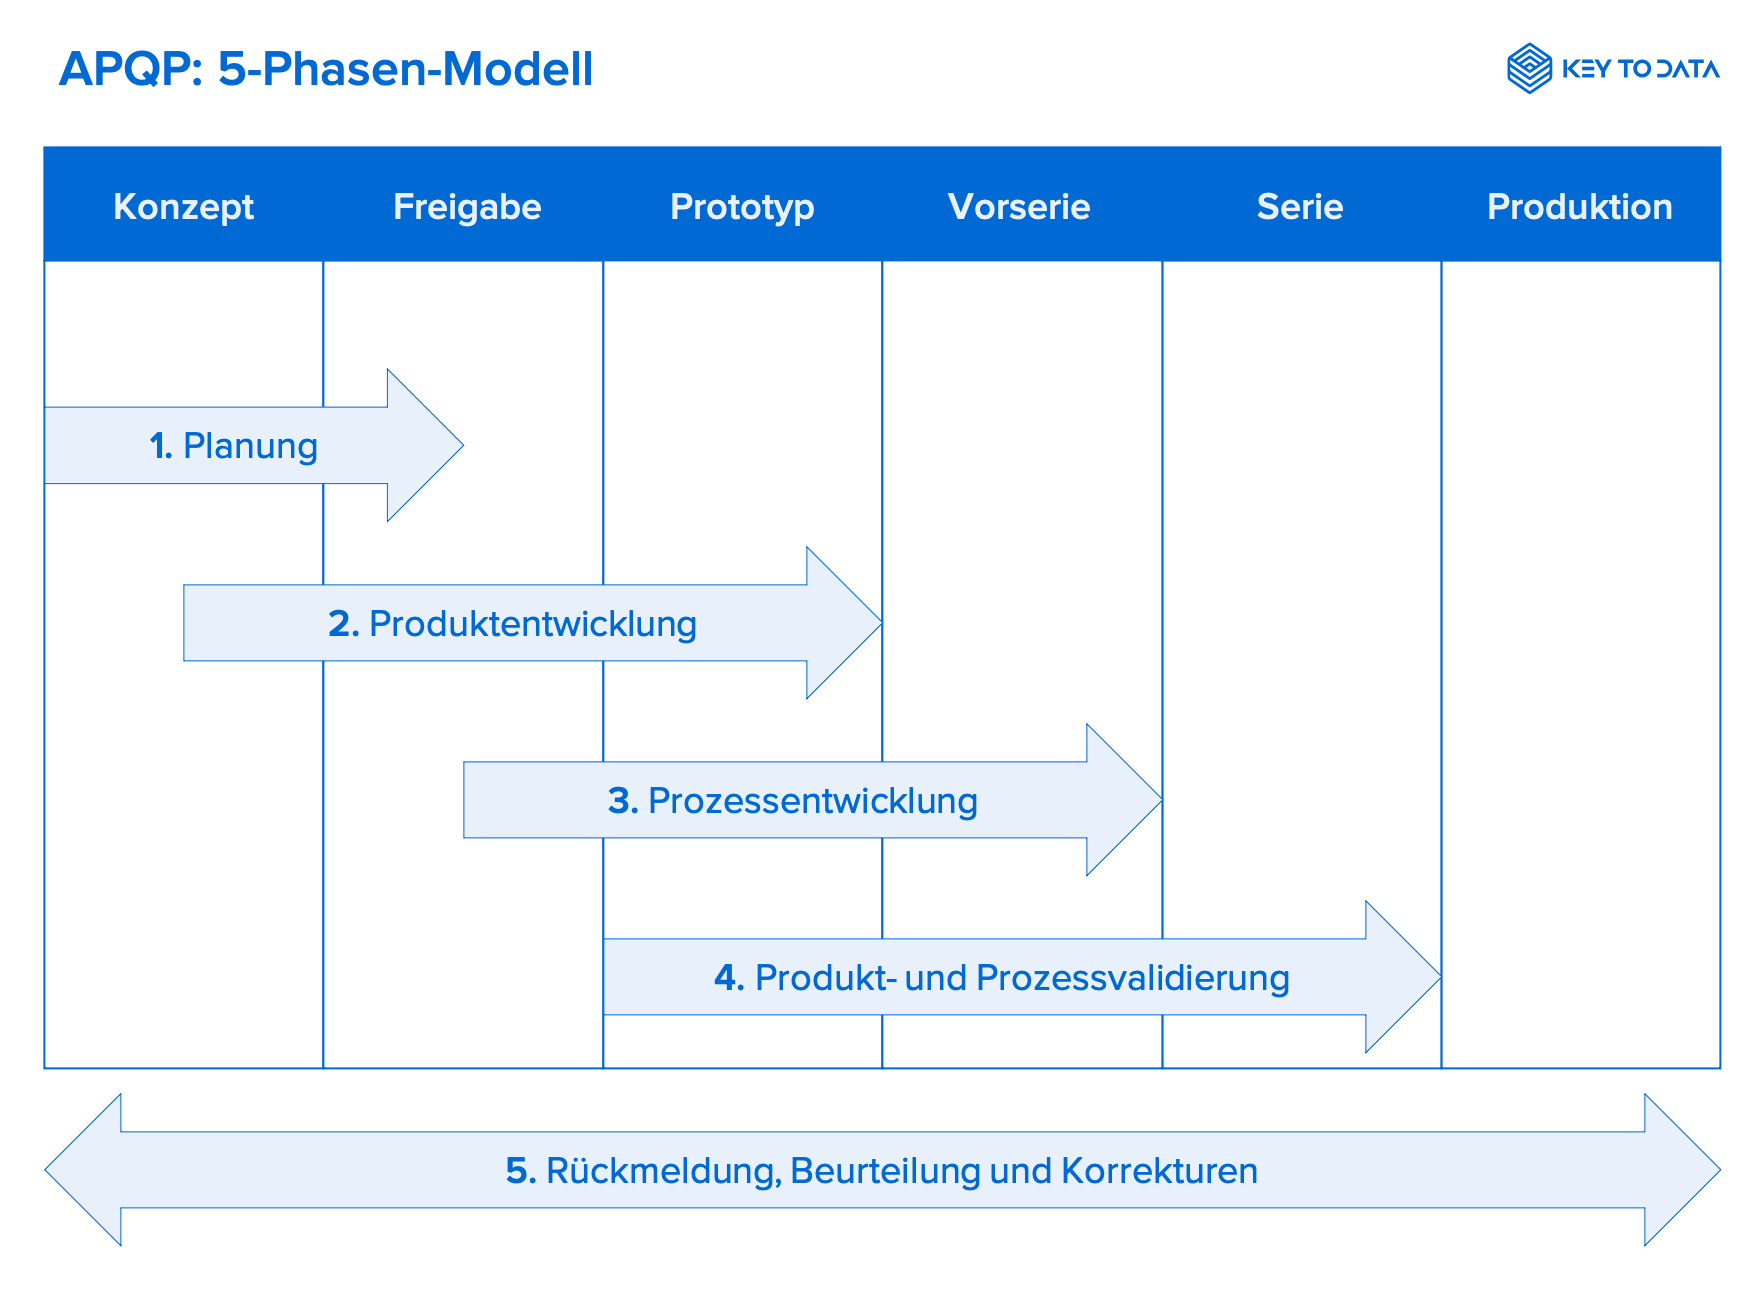 APQP 5-phase model